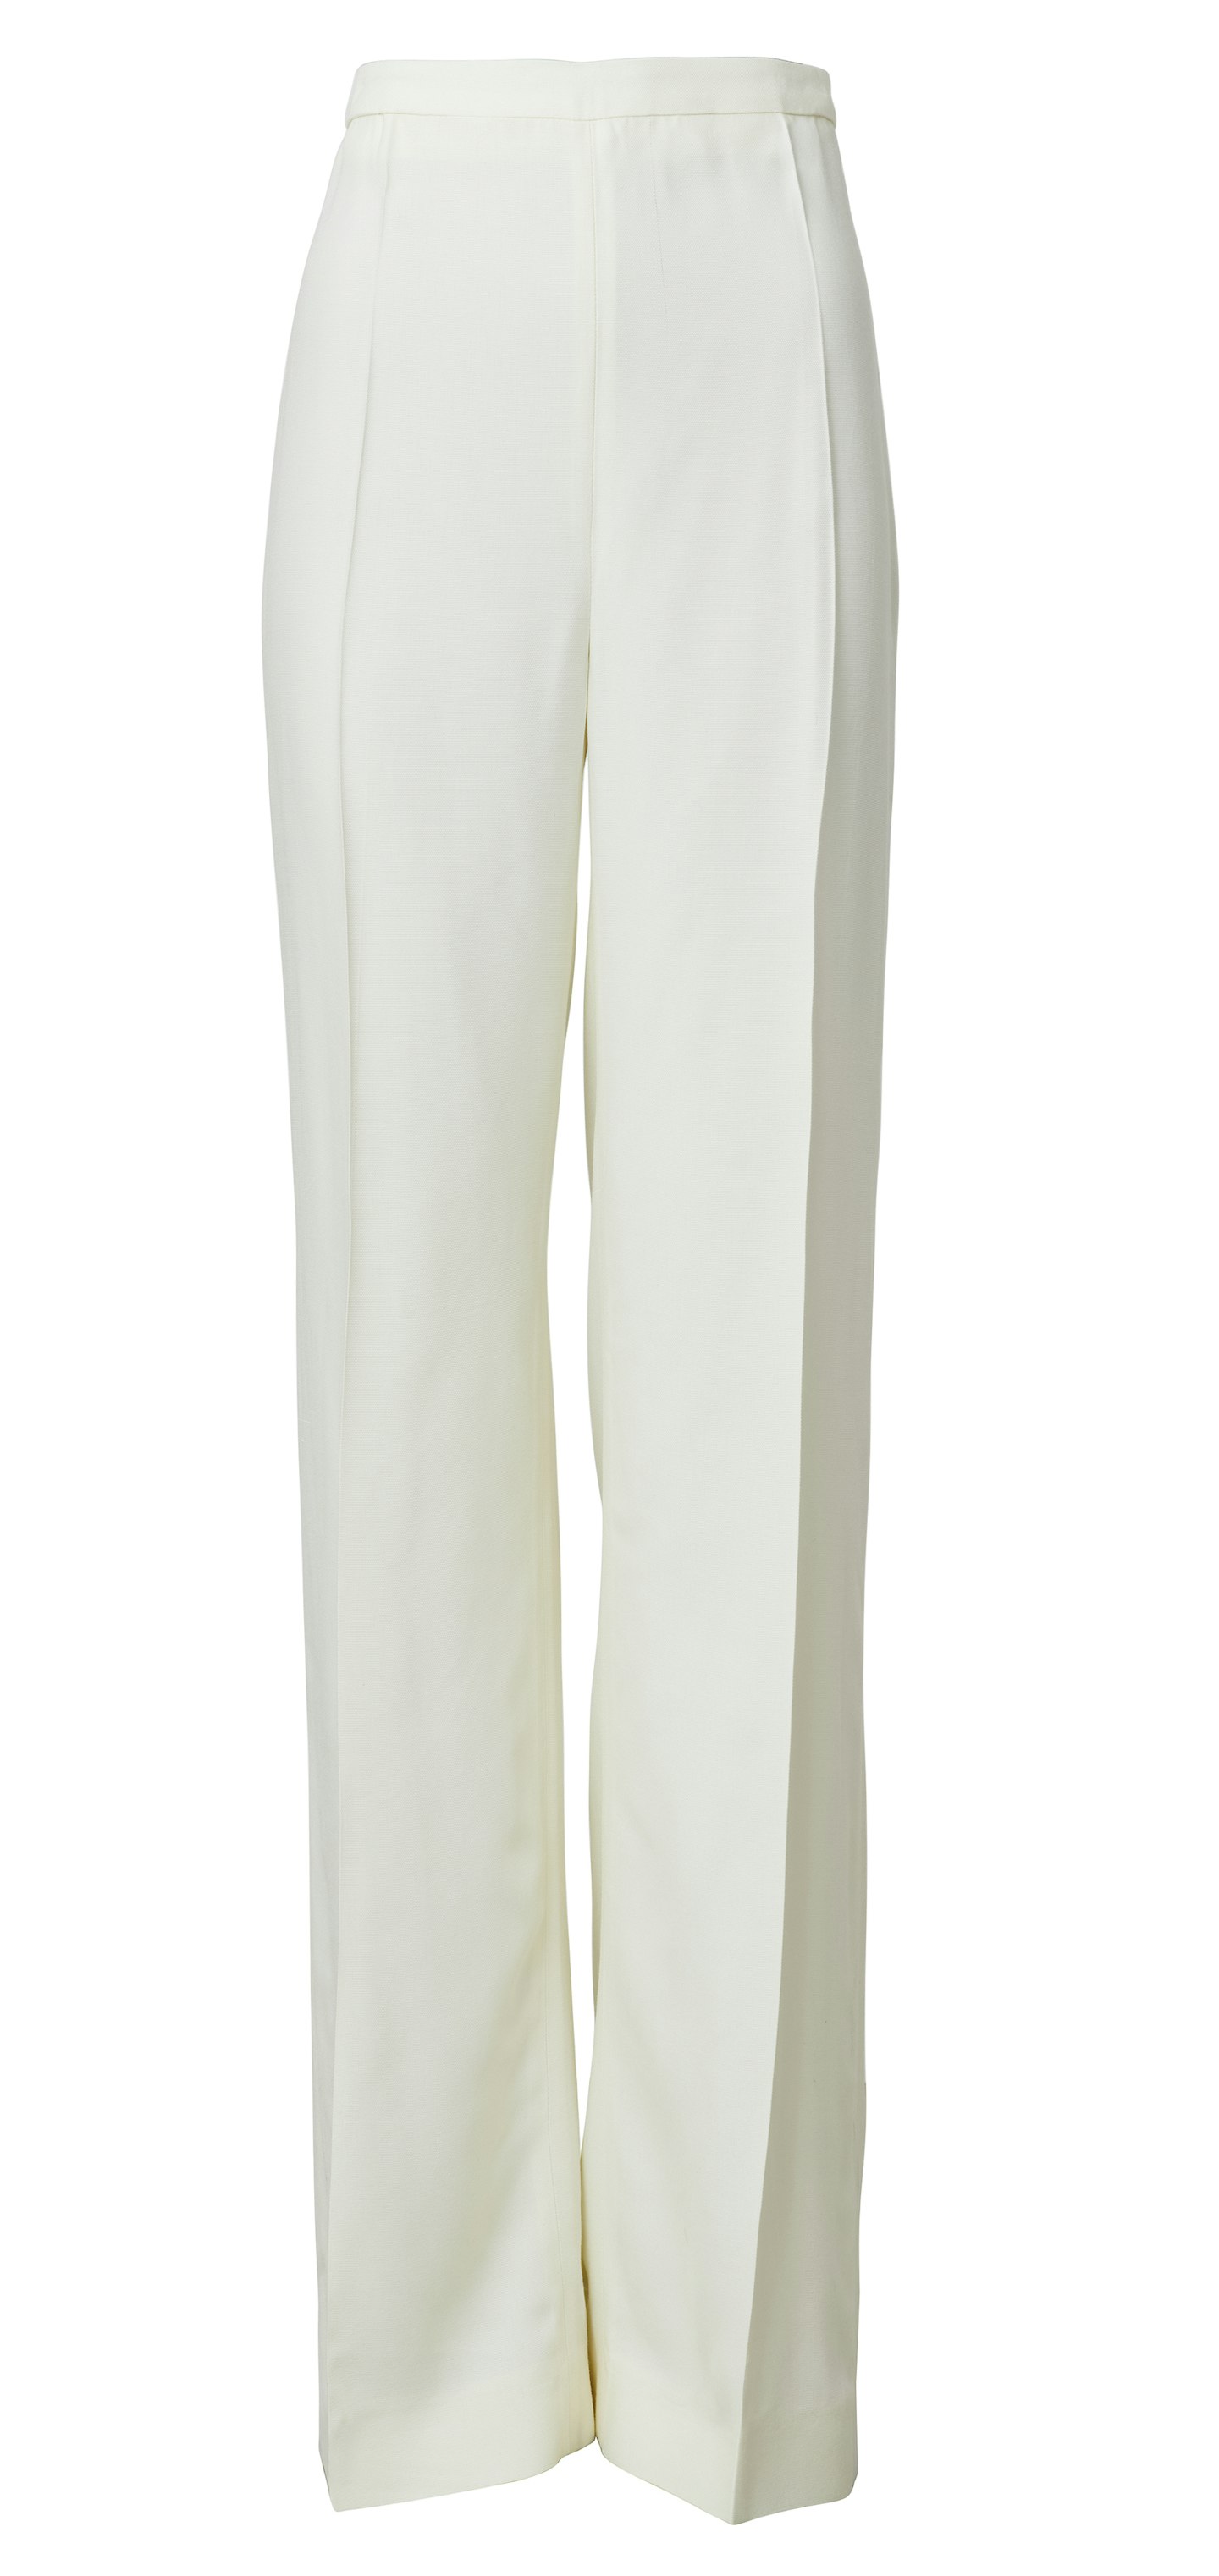 Linen-Blend Trousers, £79.99